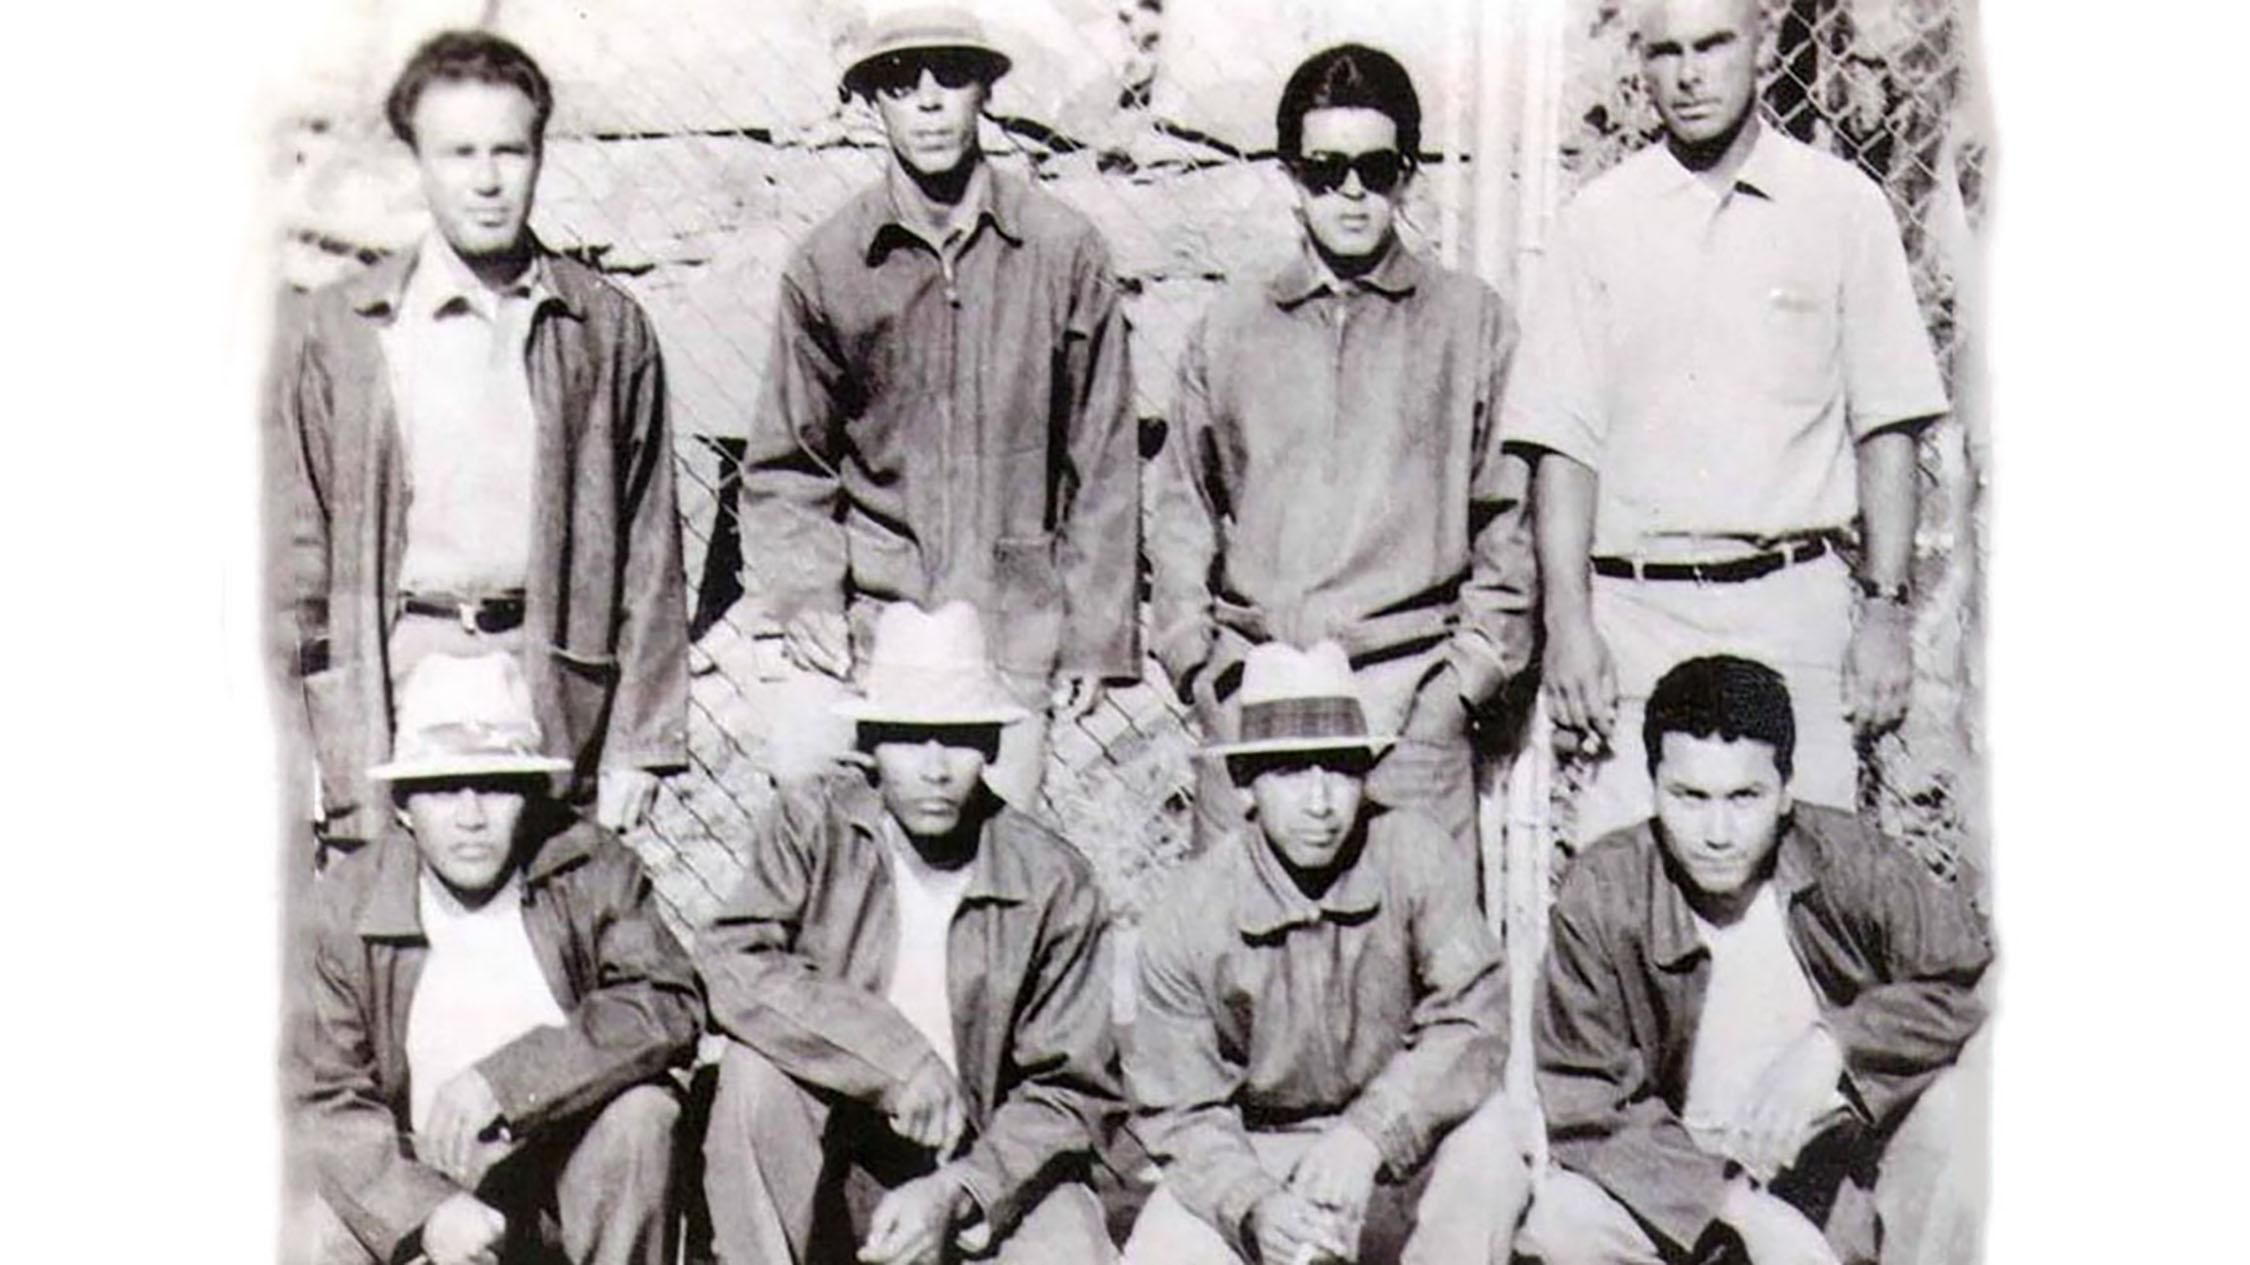 Звірська банда La Eme – тюремне угрупування в Мексиці, де вчать убивати на місці